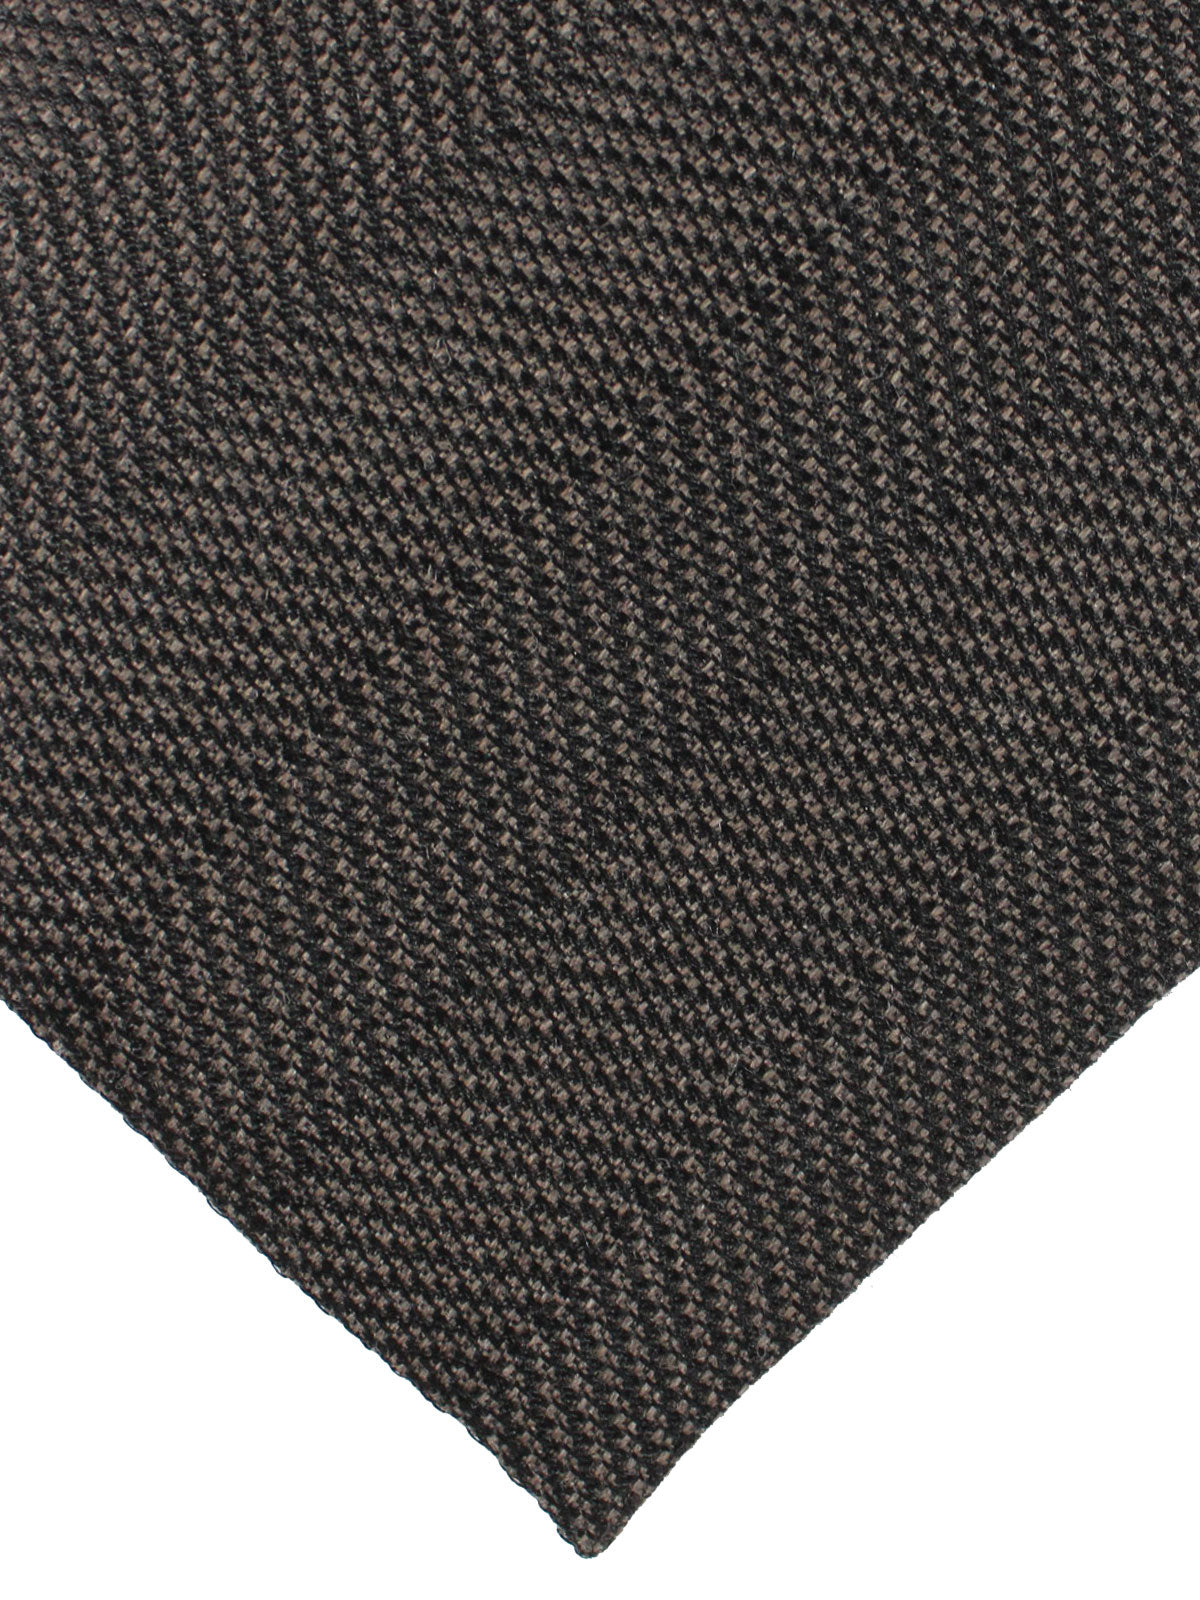 Tom Ford Wool Silk Tie Brown Stripes - Wide Necktie